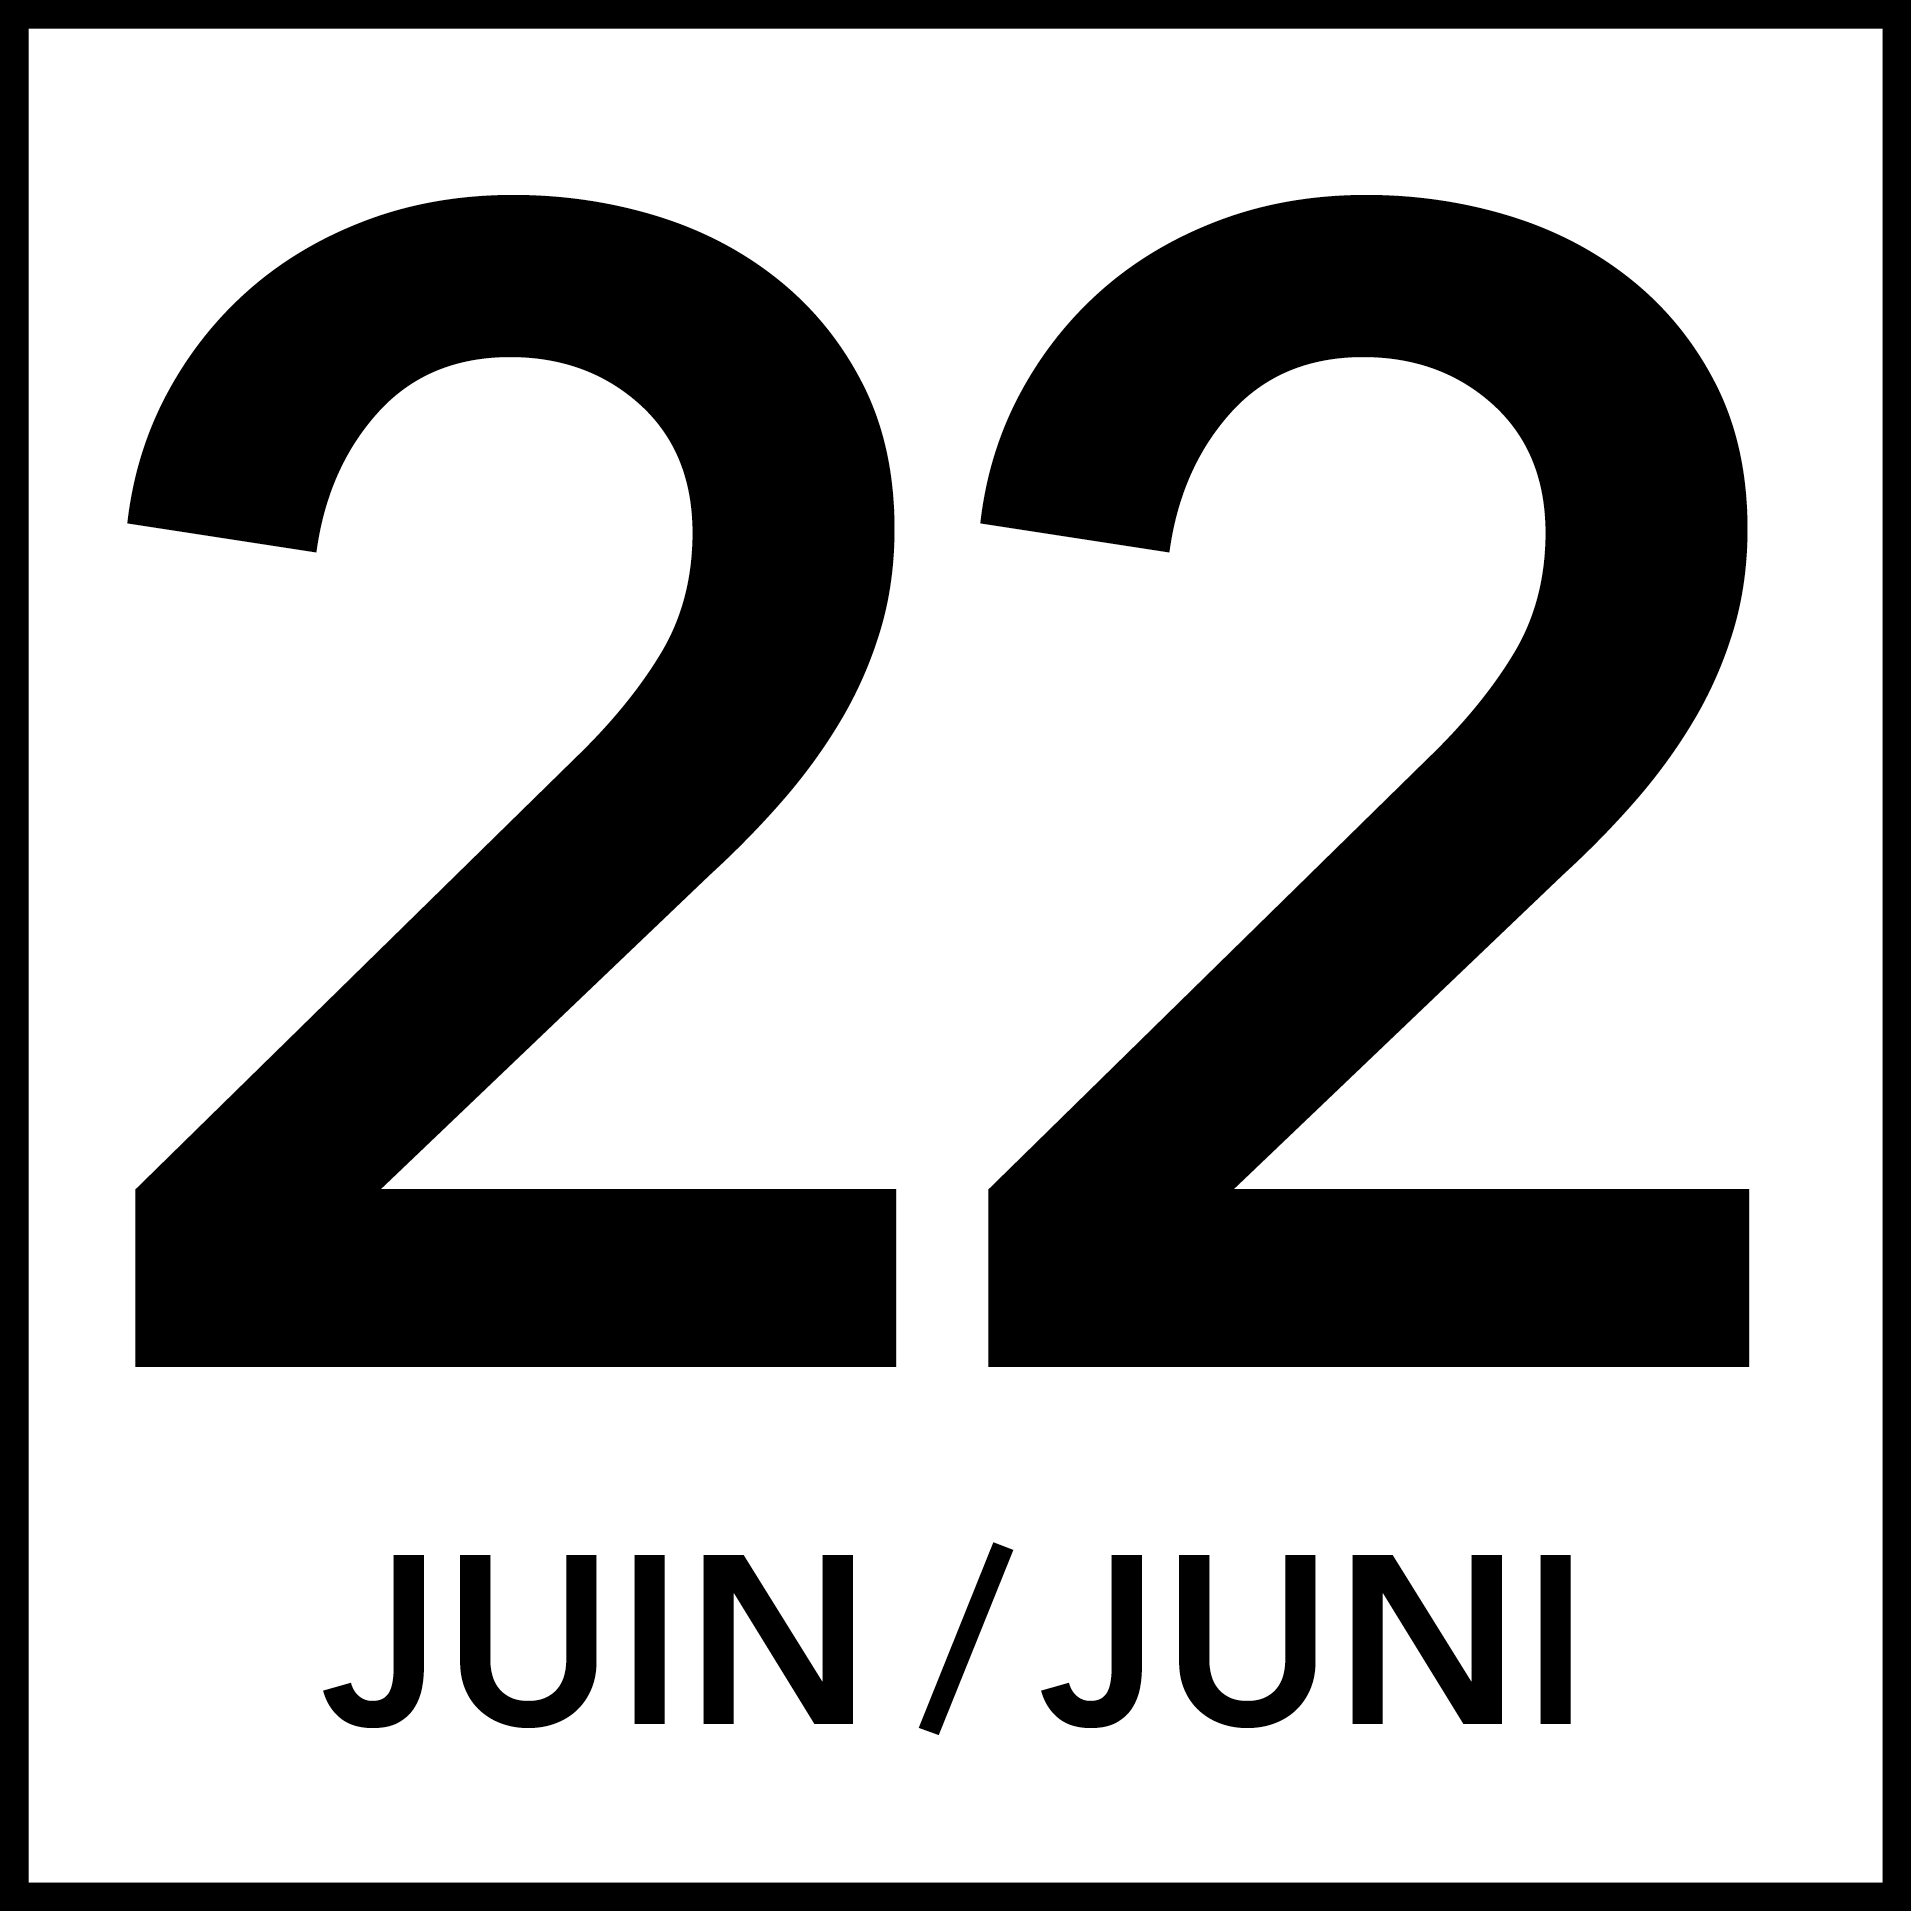 Liège, 22.06.2021